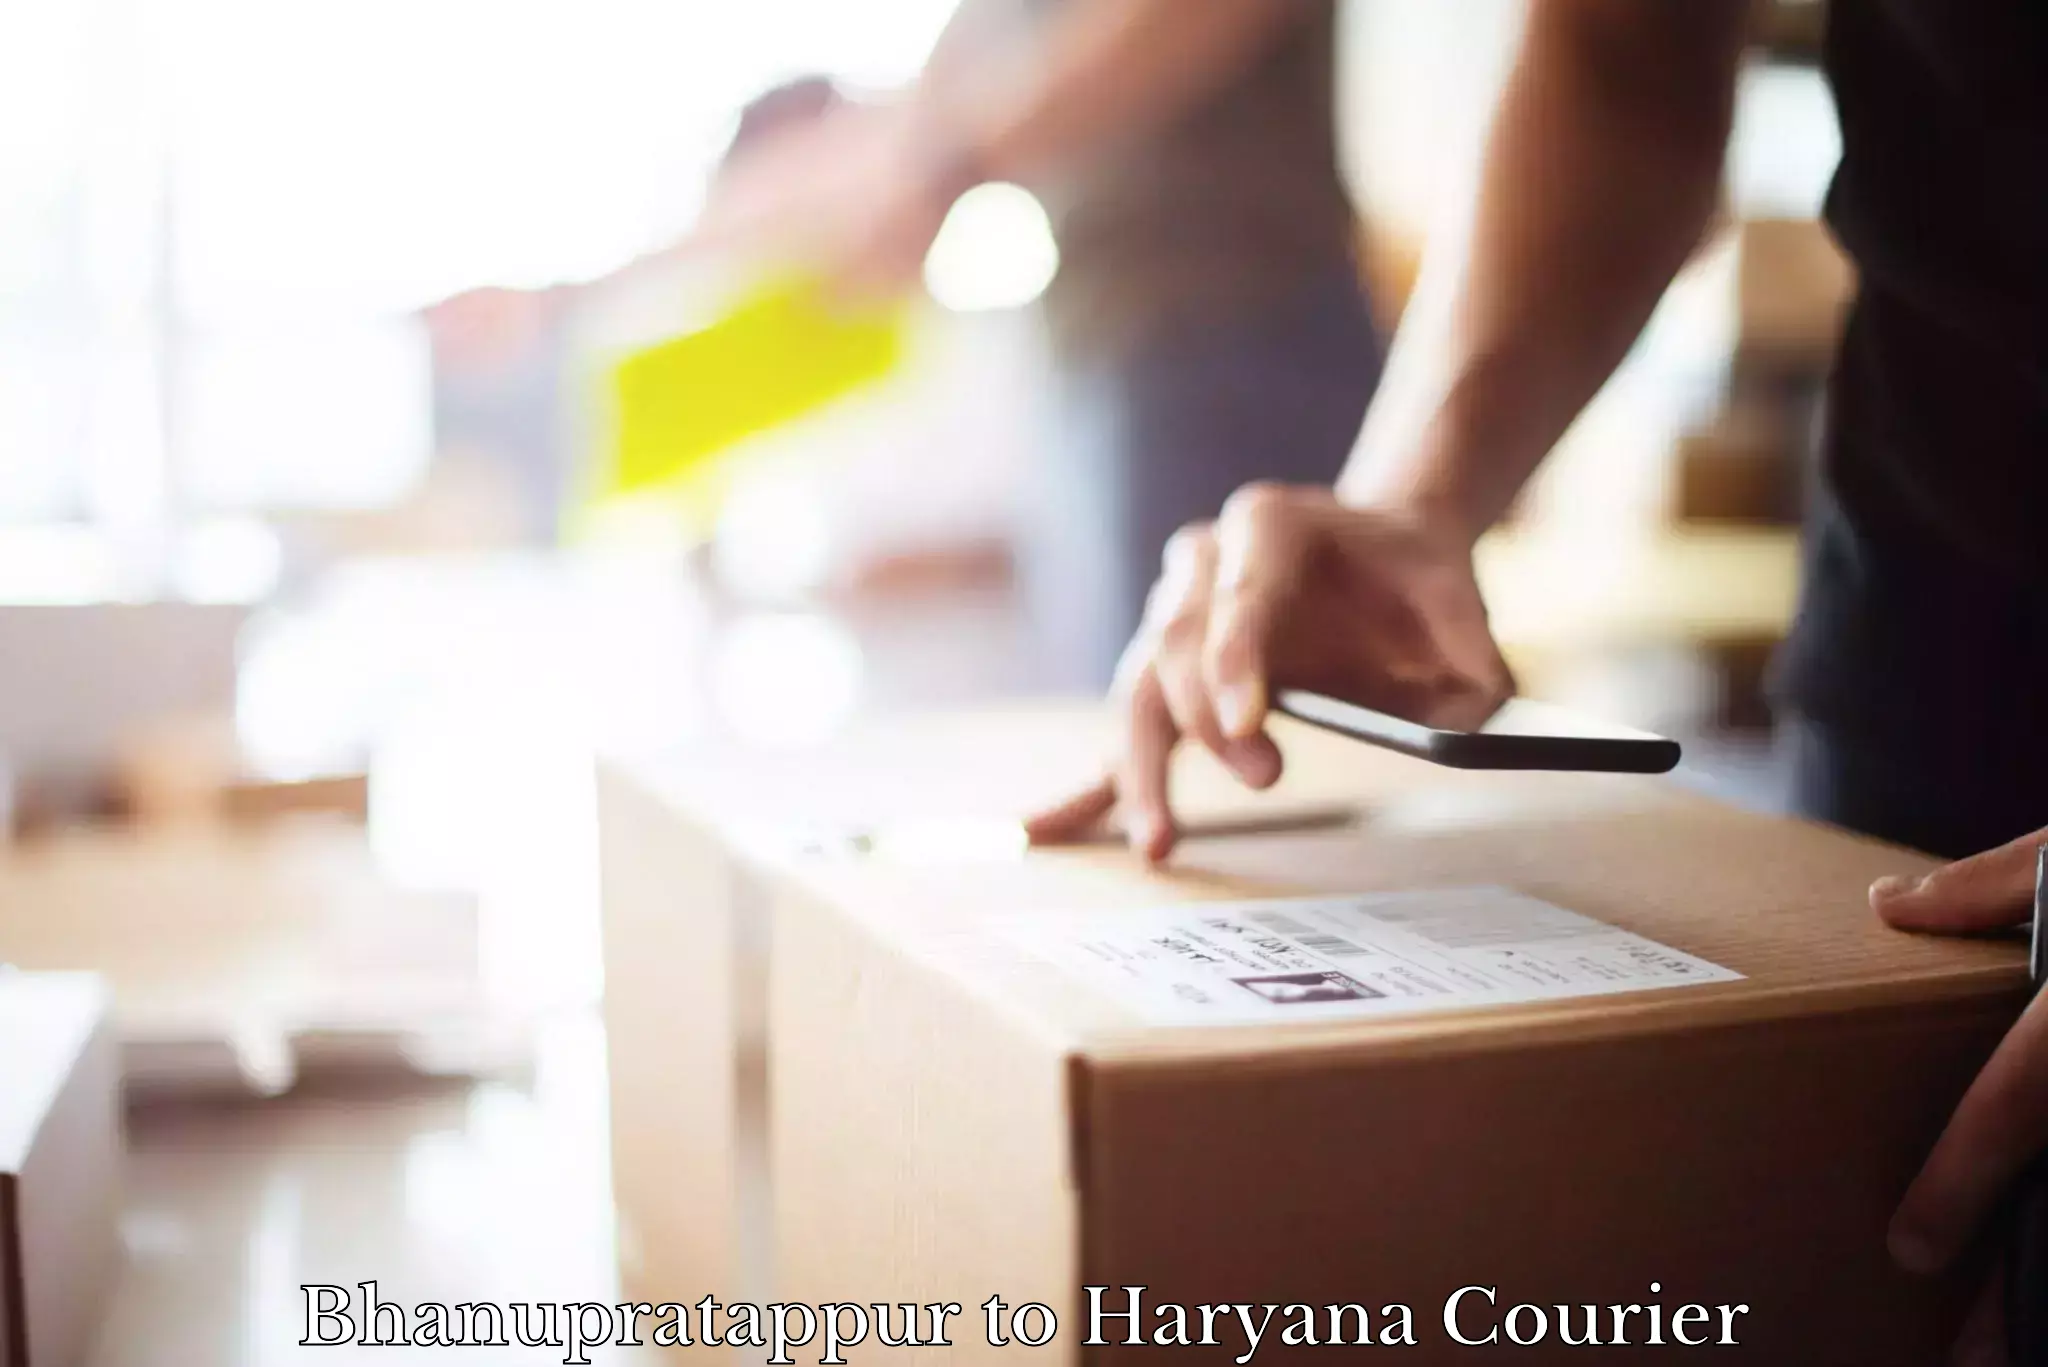 Bulk shipment Bhanupratappur to Haryana